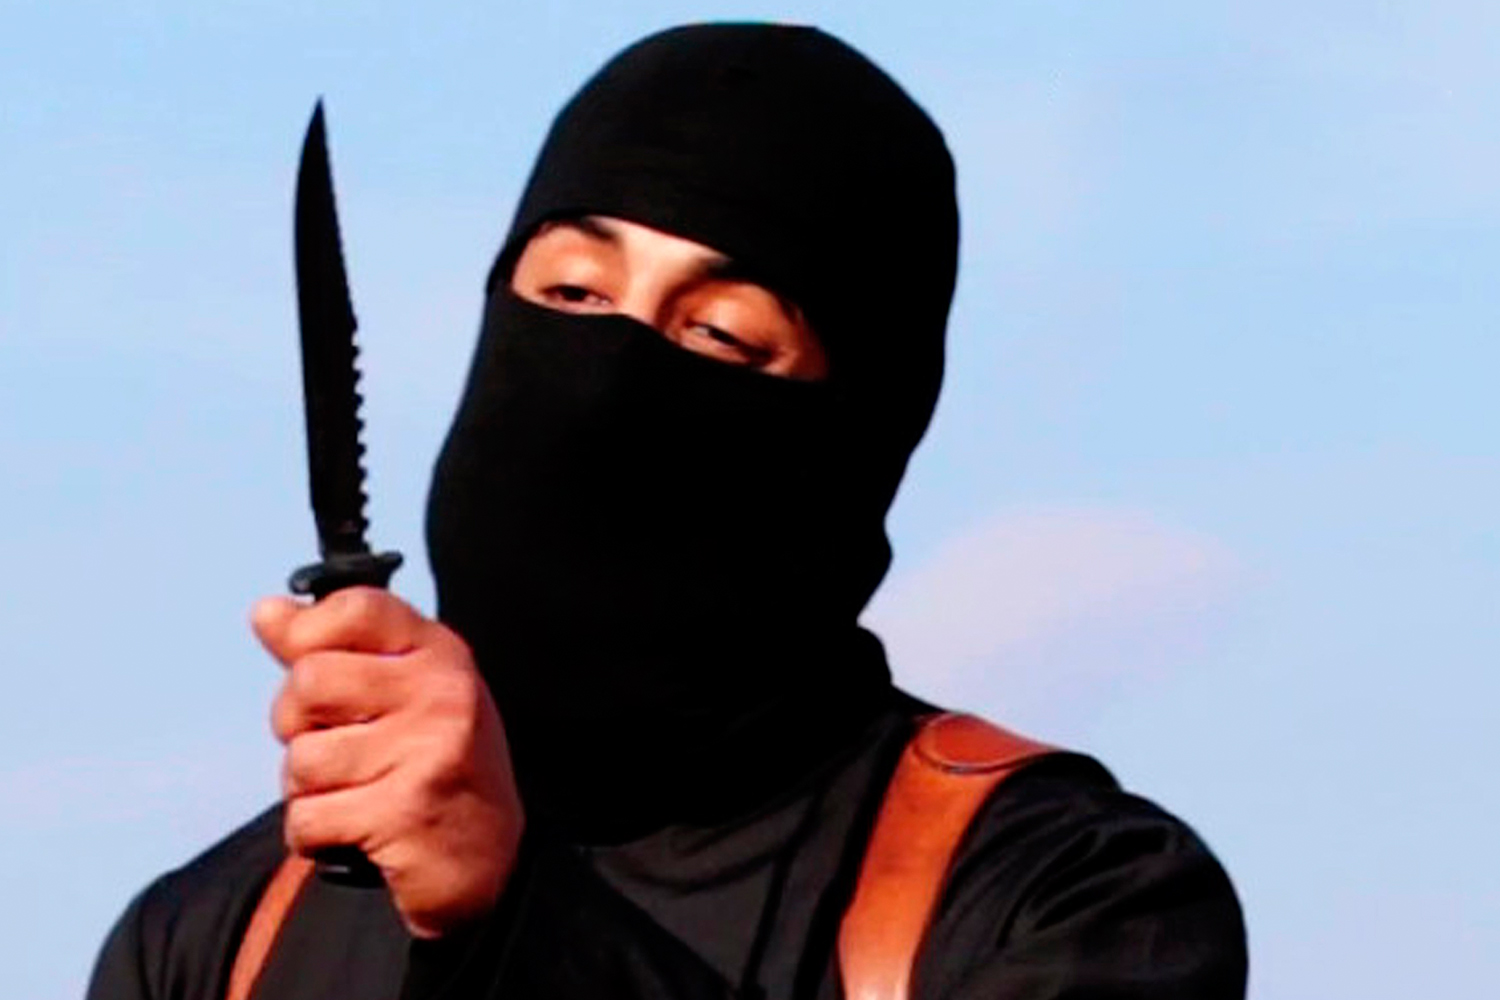 Rastrean al reclutador del 'yihadista John' gracias a su cuenta en LinkedIn